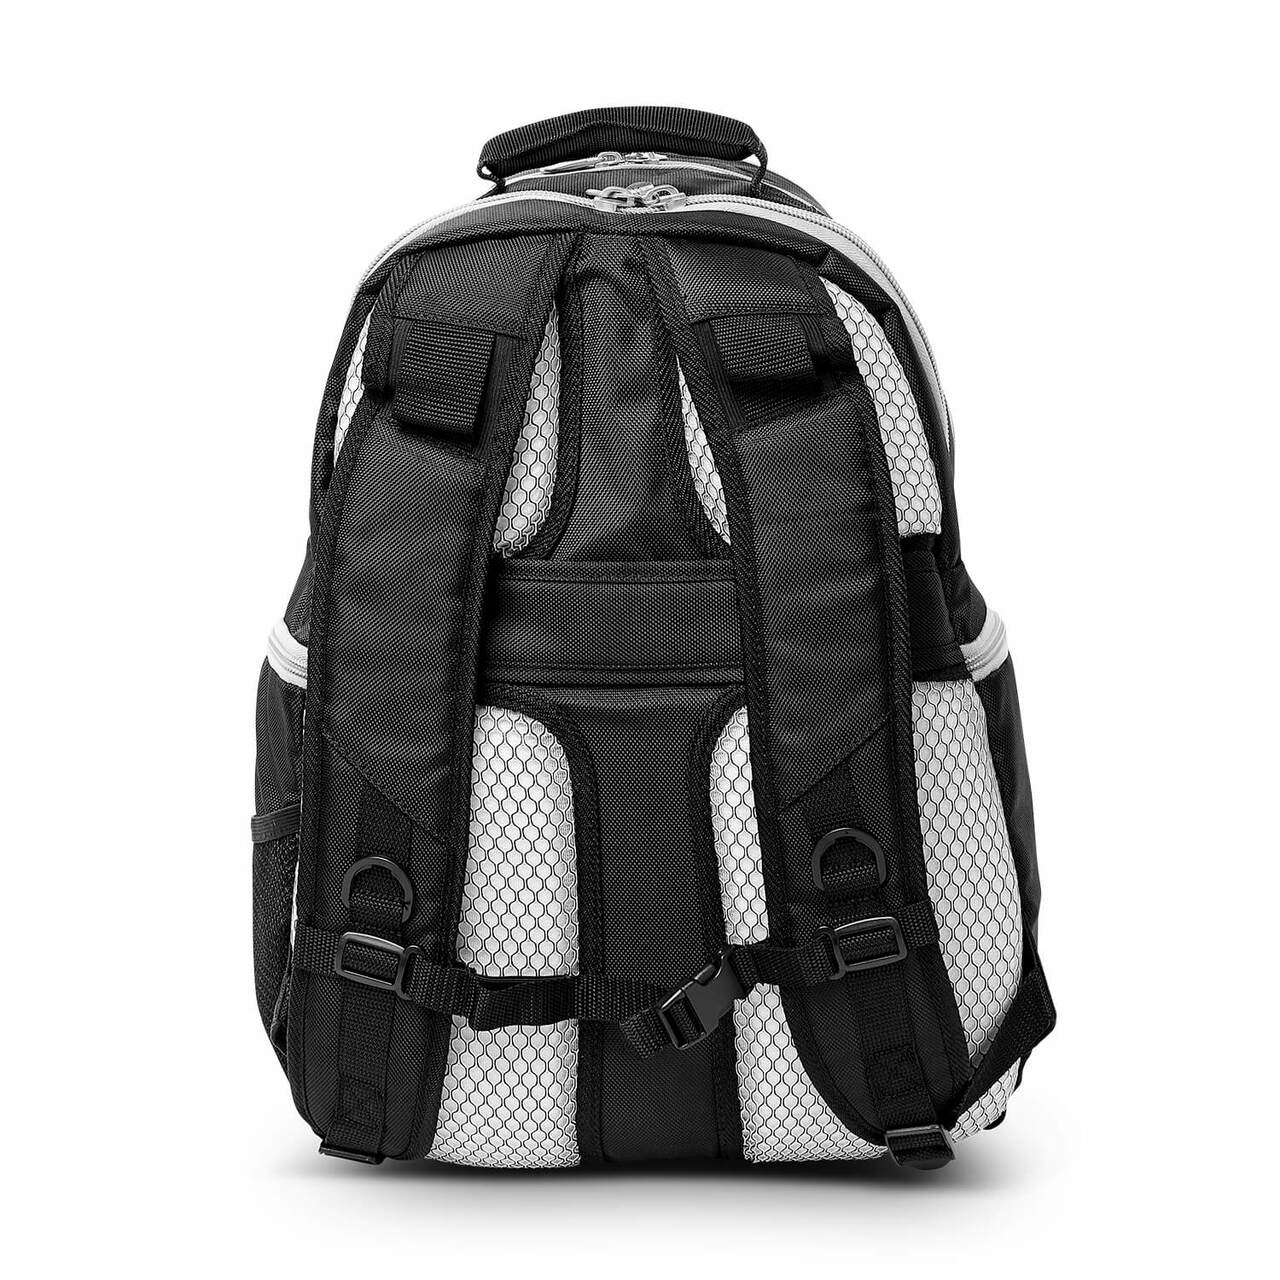 Tar Heels Backpack | UNC Tar Heels Laptop Backpack